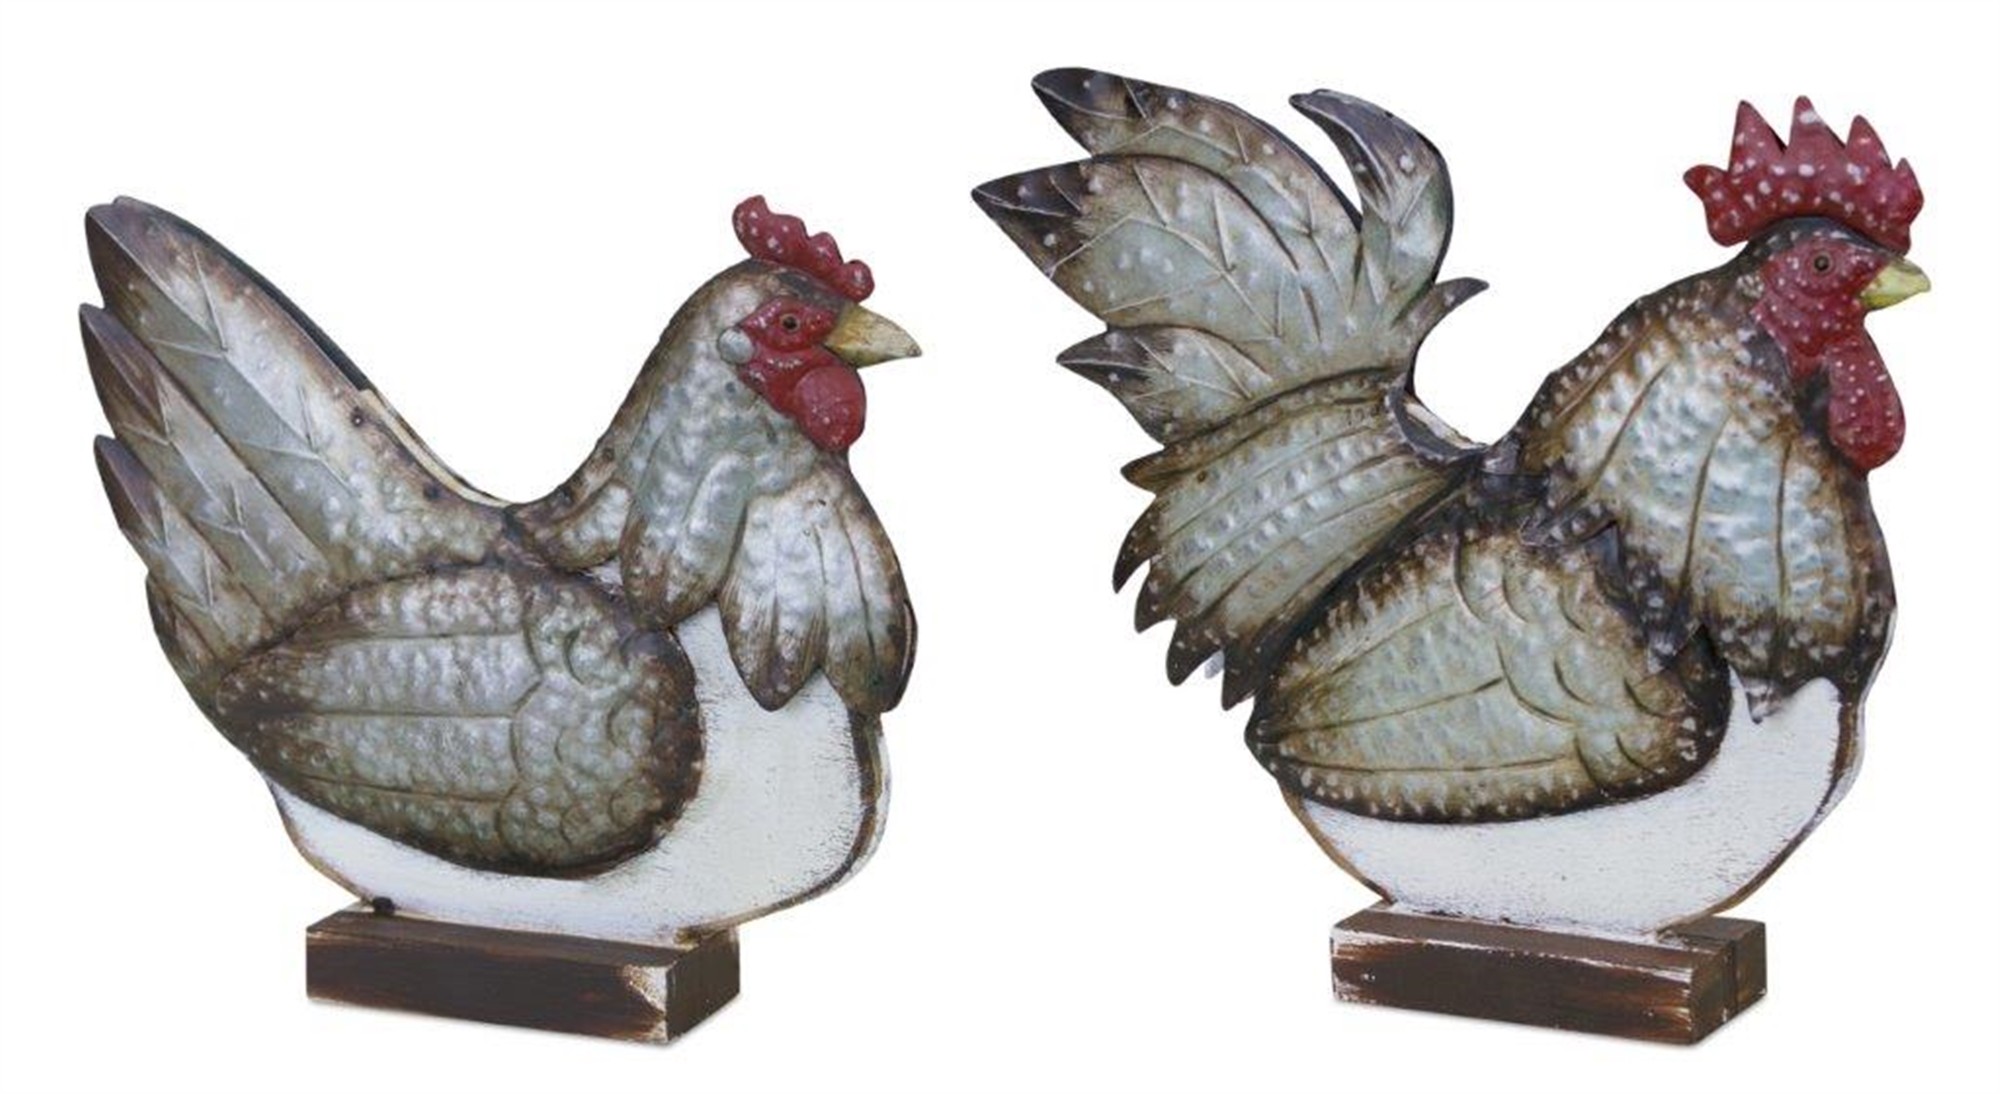 Chicken on Stand (Set of 2) 10.5"L x 9.25"H, 12.5"L x 11.25"H Wood/Metal